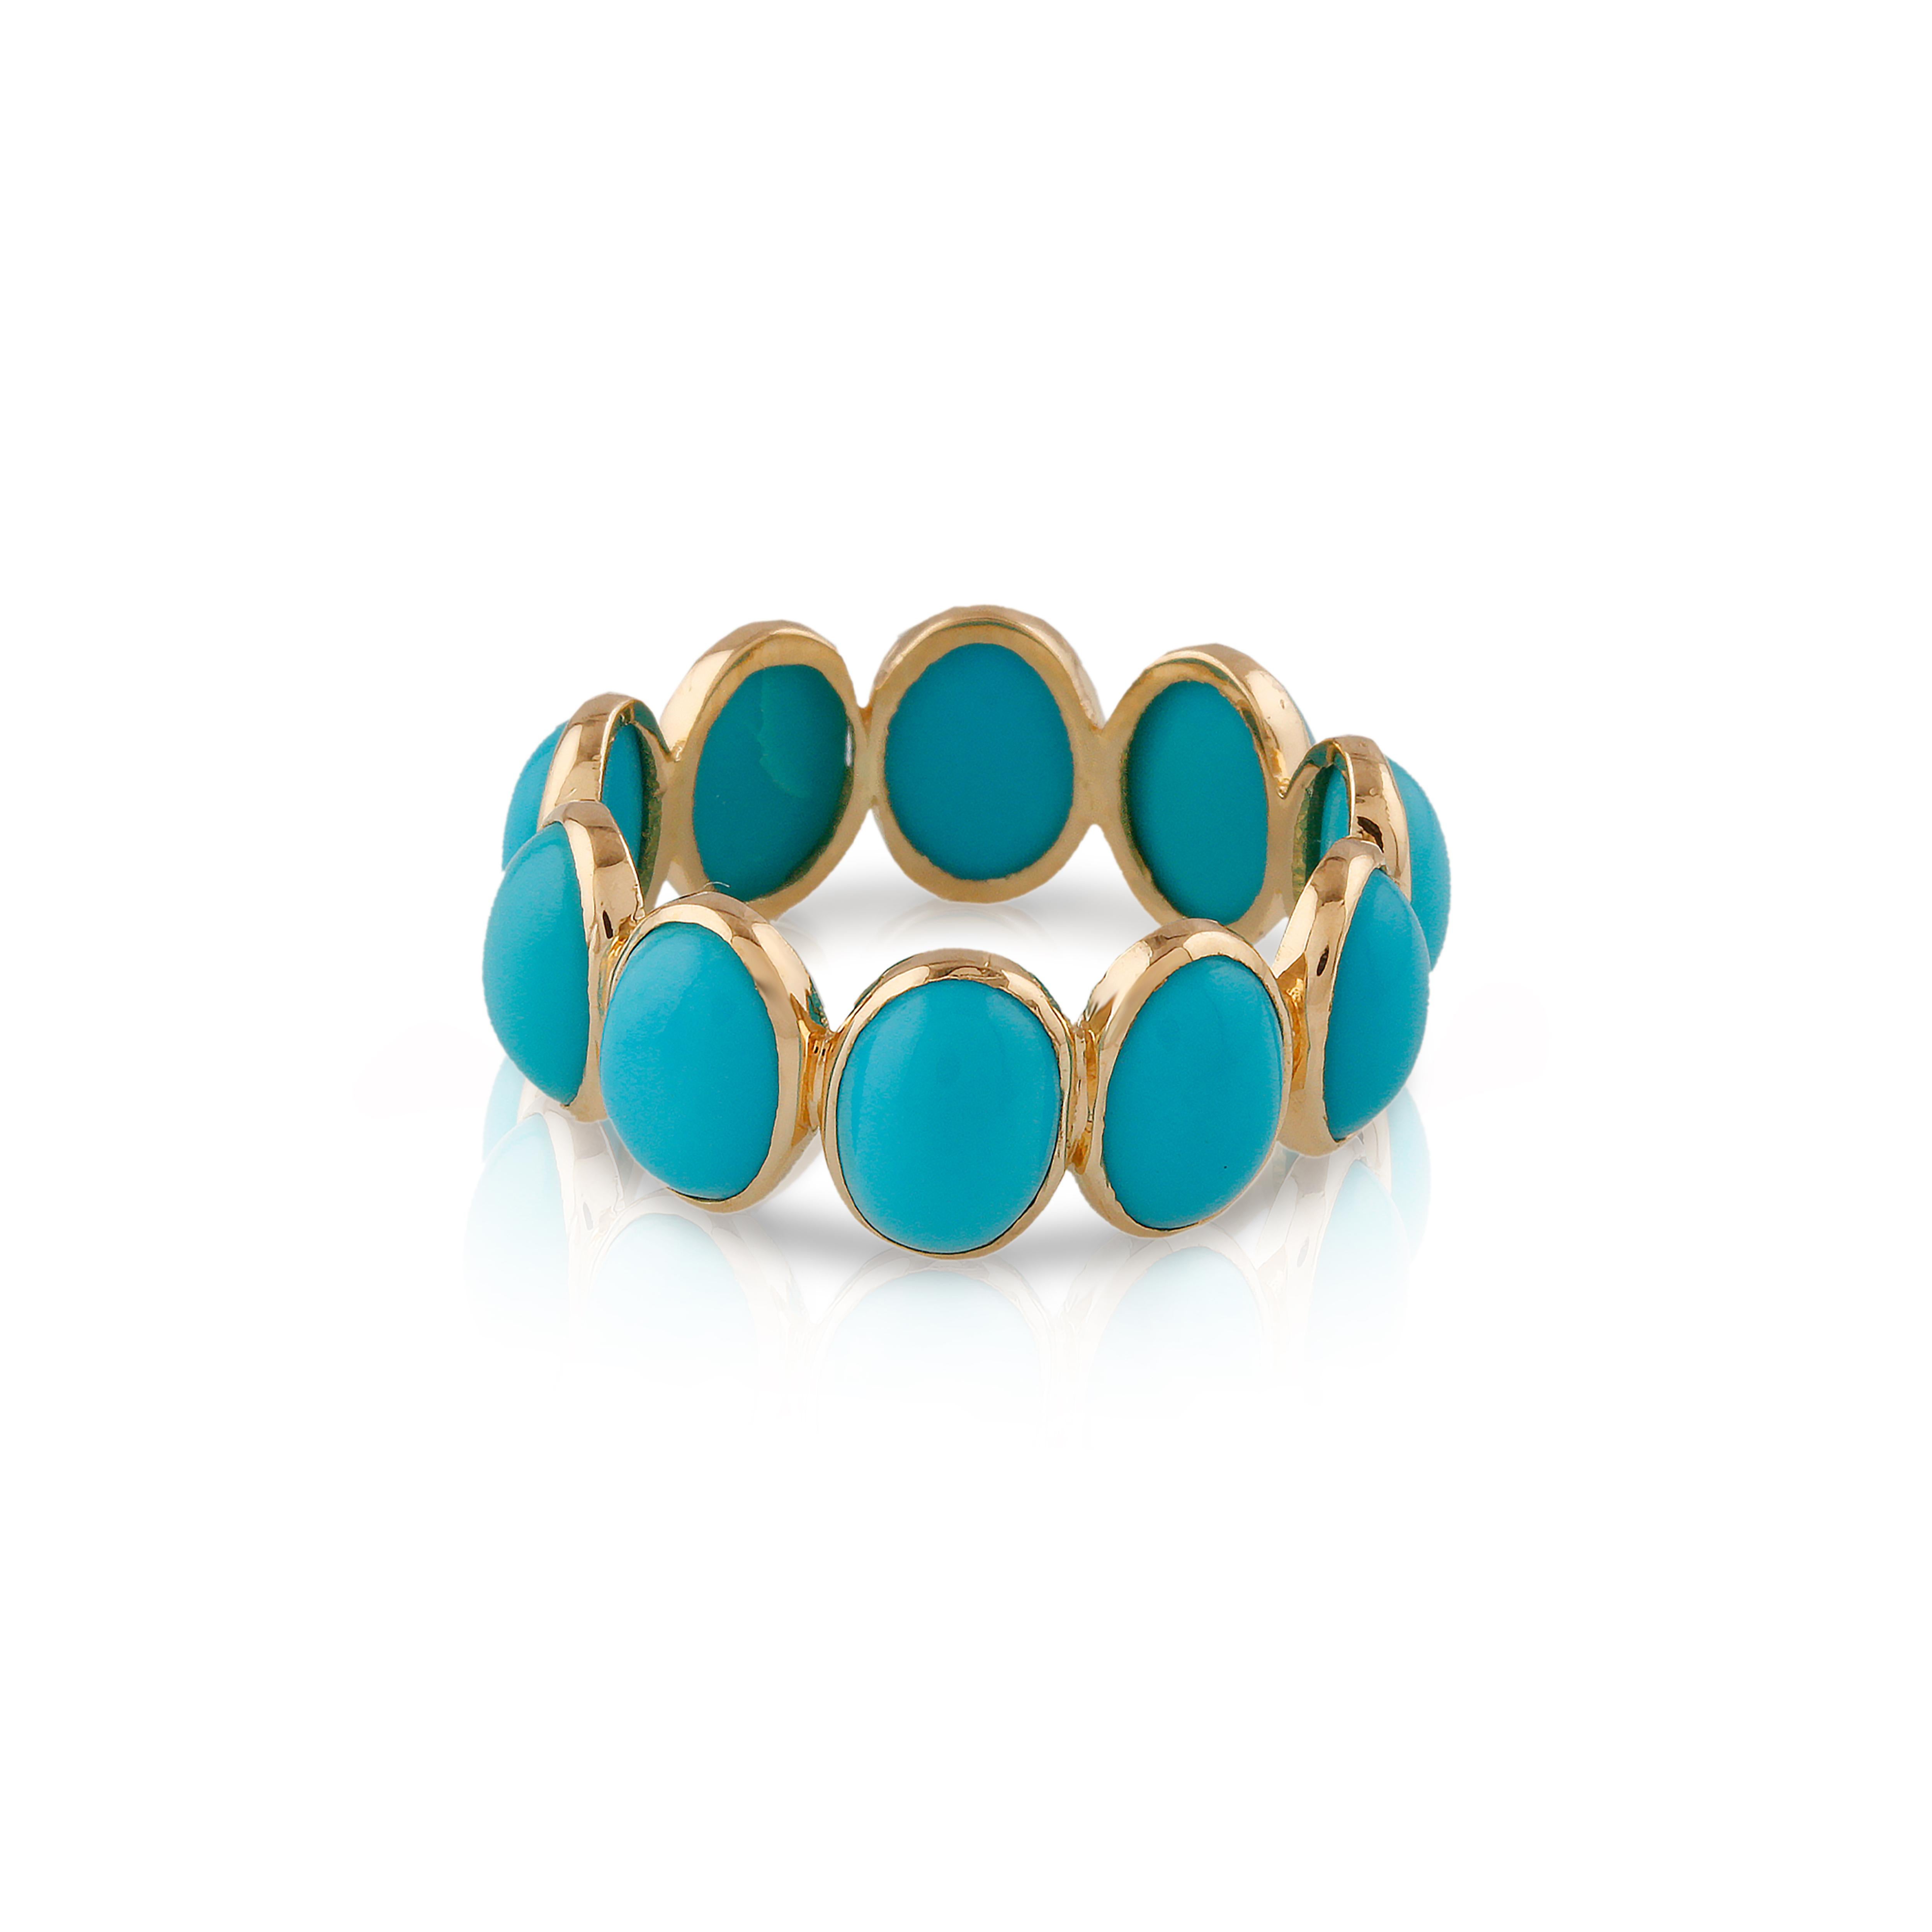 La bague Tresor Beautiful Ring est ornée de 6,25 carats de turquoise. Les bagues sont une ode à la beauté luxueuse et classique, avec des pierres précieuses étincelantes et des teintes féminines. Leur design contemporain et moderne les rend parfaits